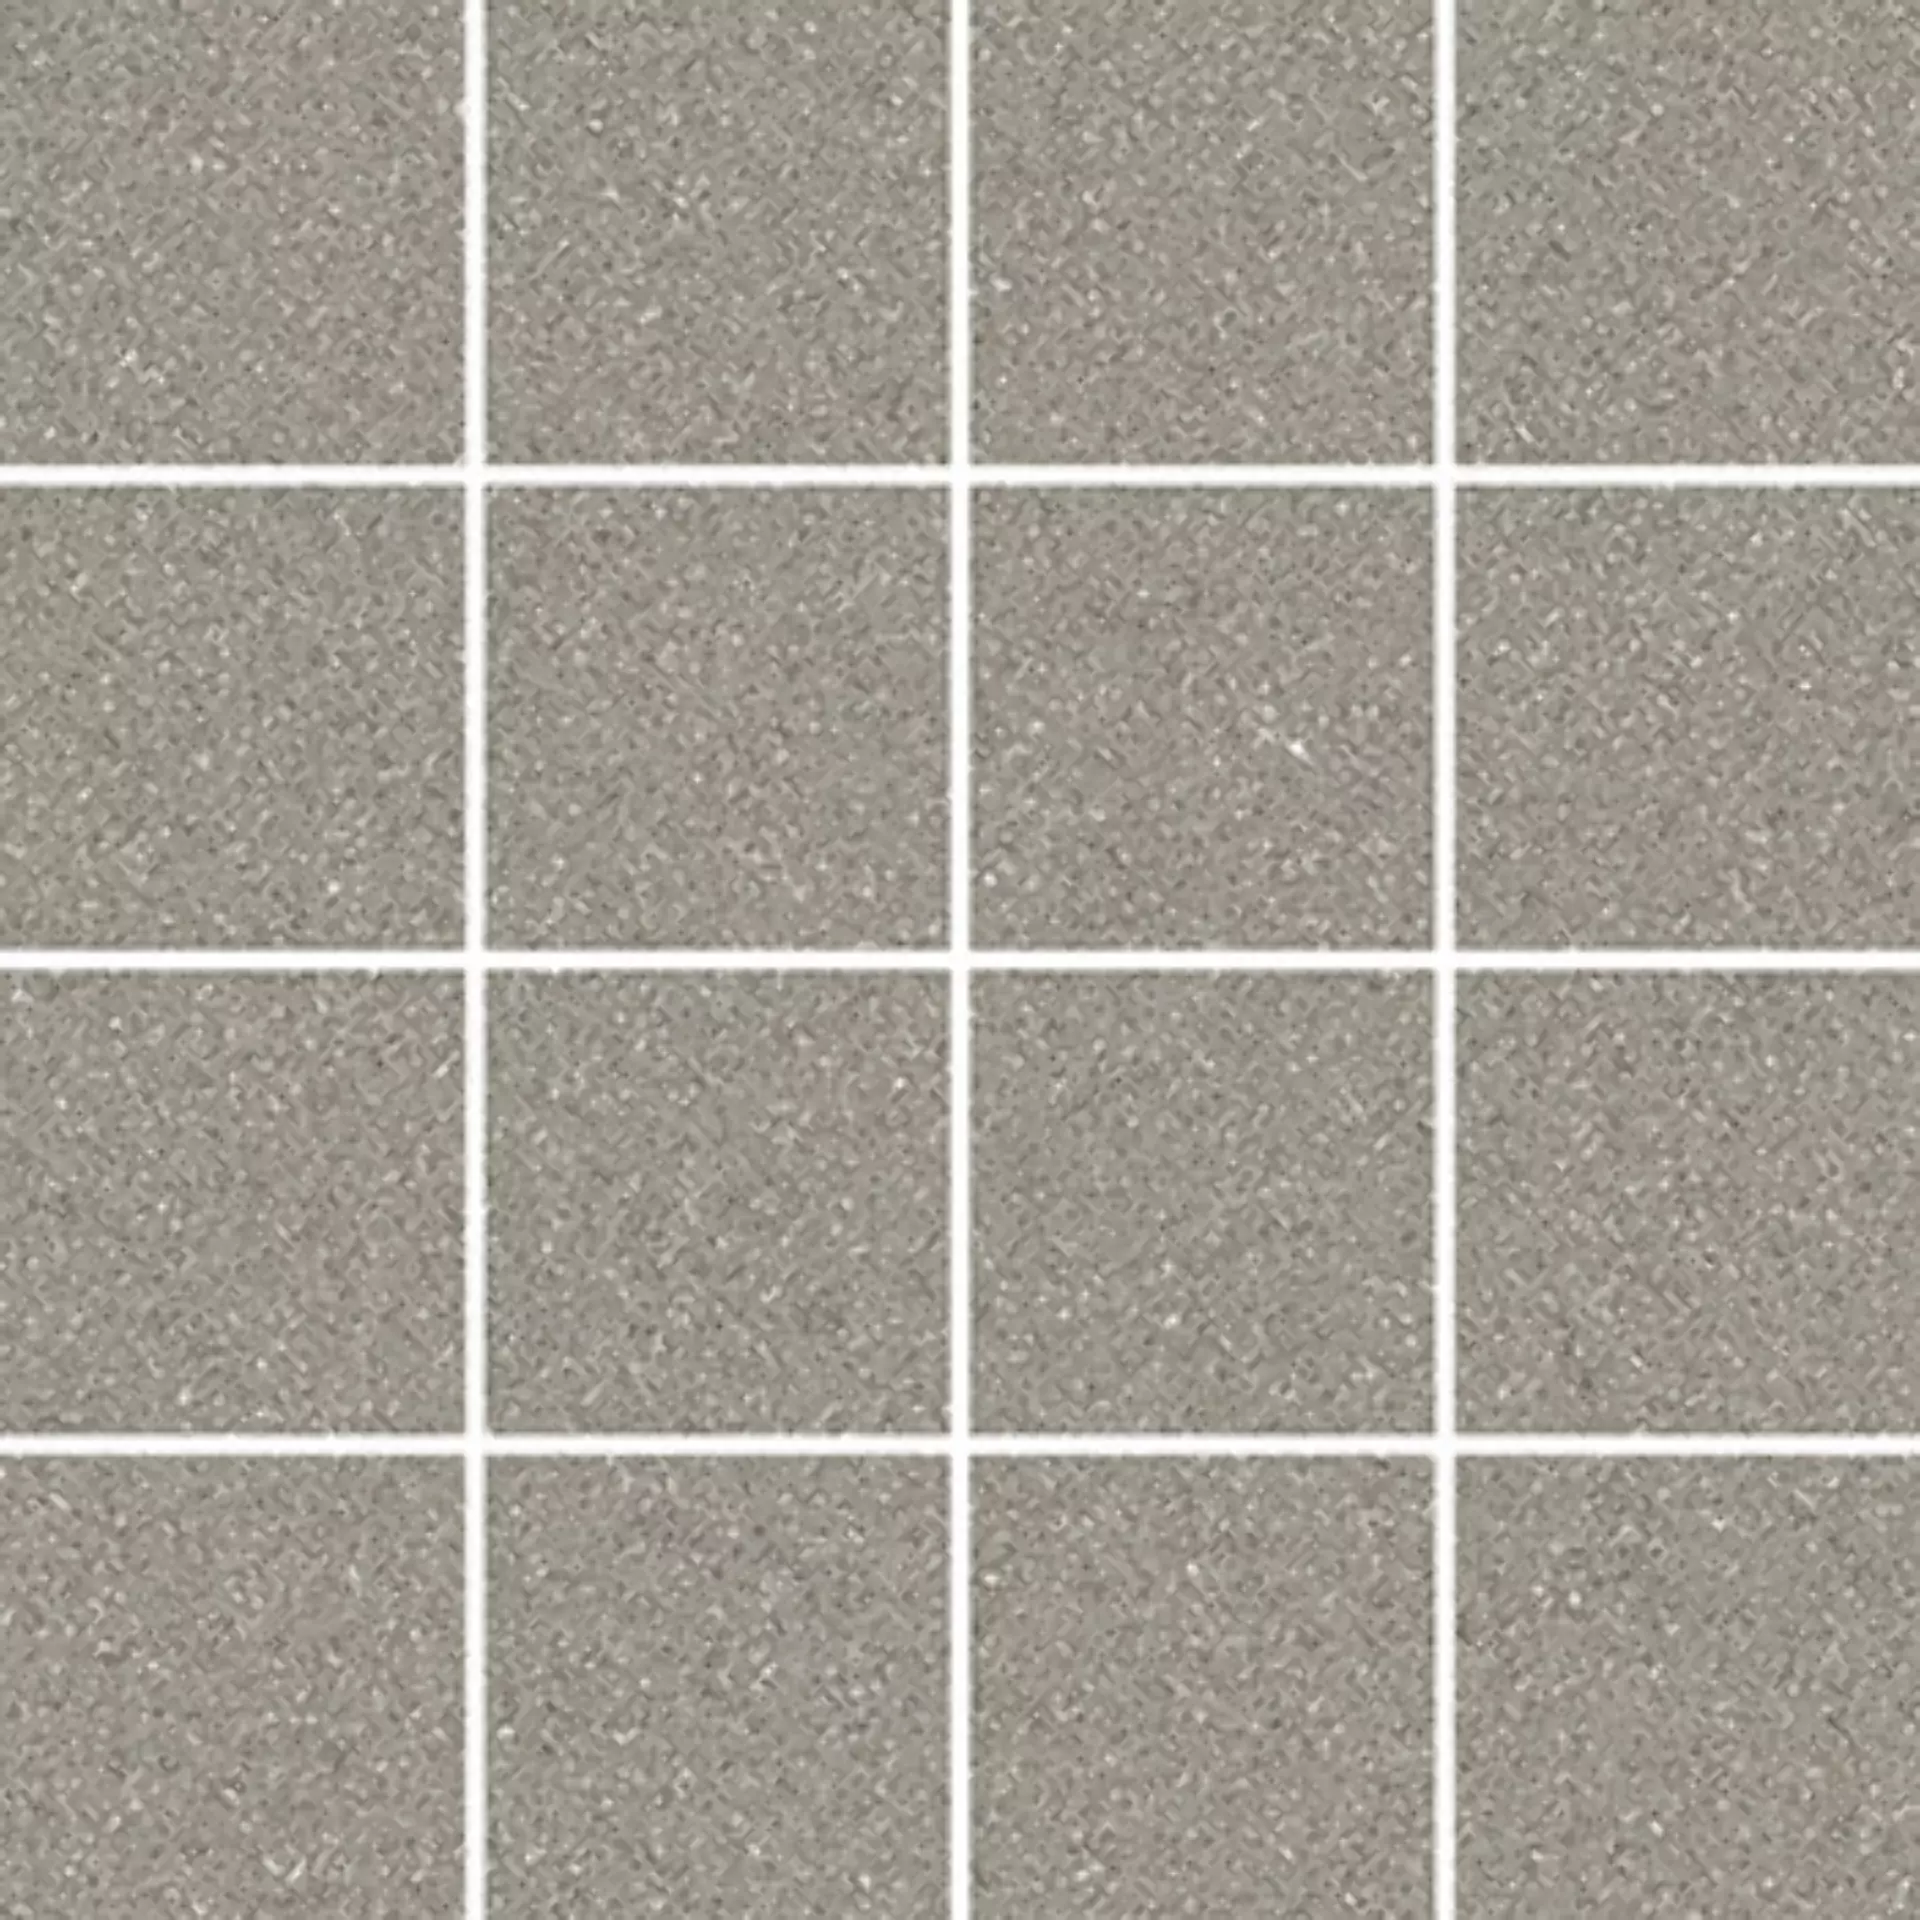 Wandfliese,Bodenfliese Villeroy & Boch Pure Line 2.0 Cement Grey Matt Cement Grey 2013-UL61 matt 7,5x7,5cm Mosaik (7,5x7,5) rektifiziert 12mm